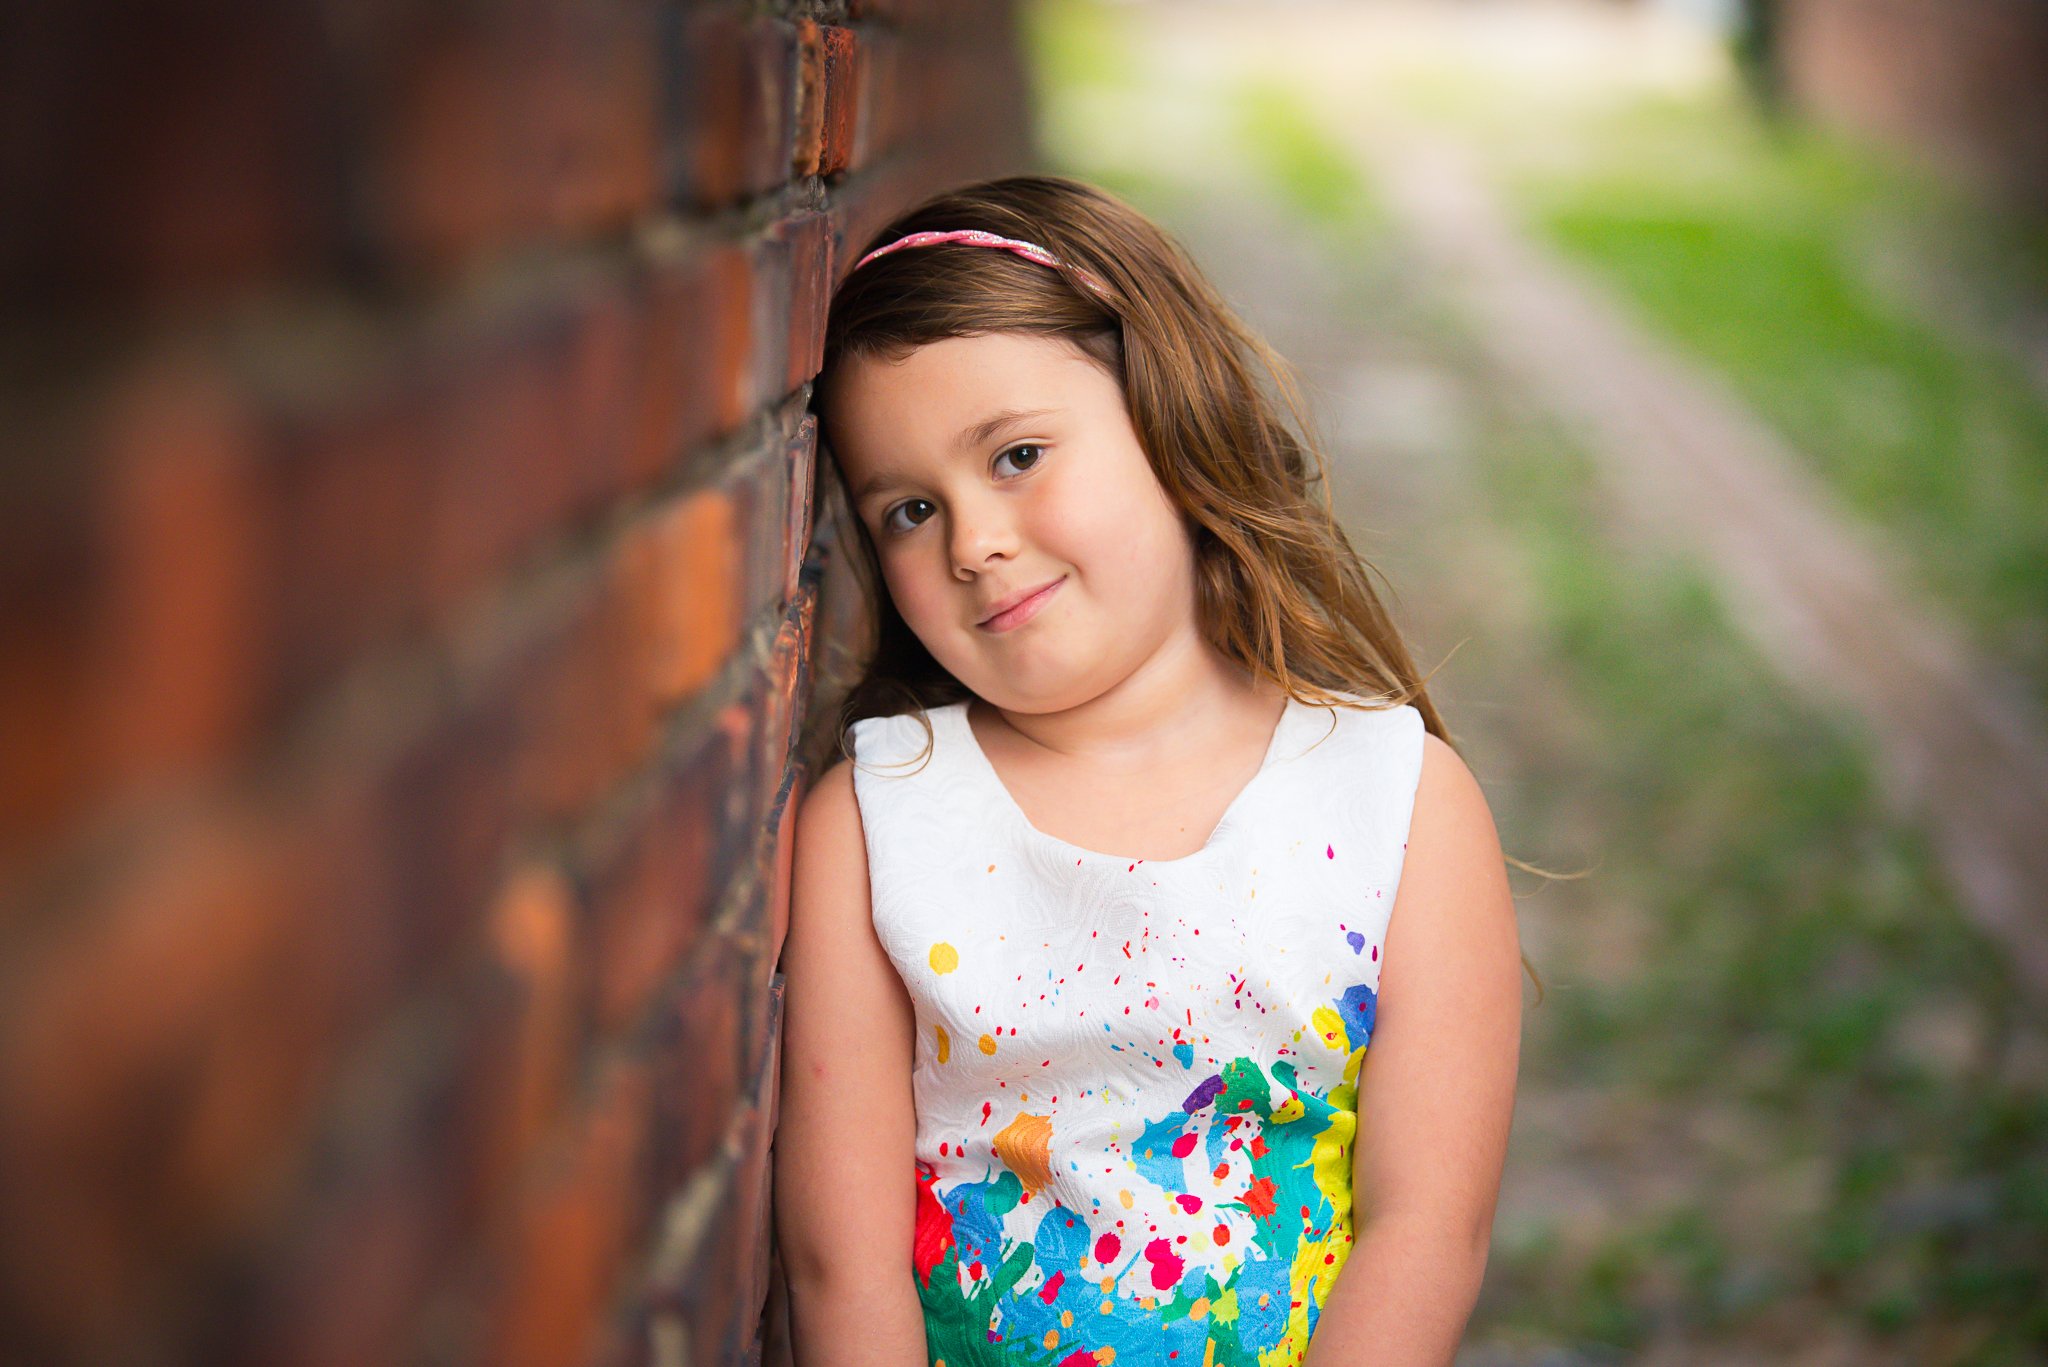 Child Photographer | DC MD VA Portrait Photographer | DCP